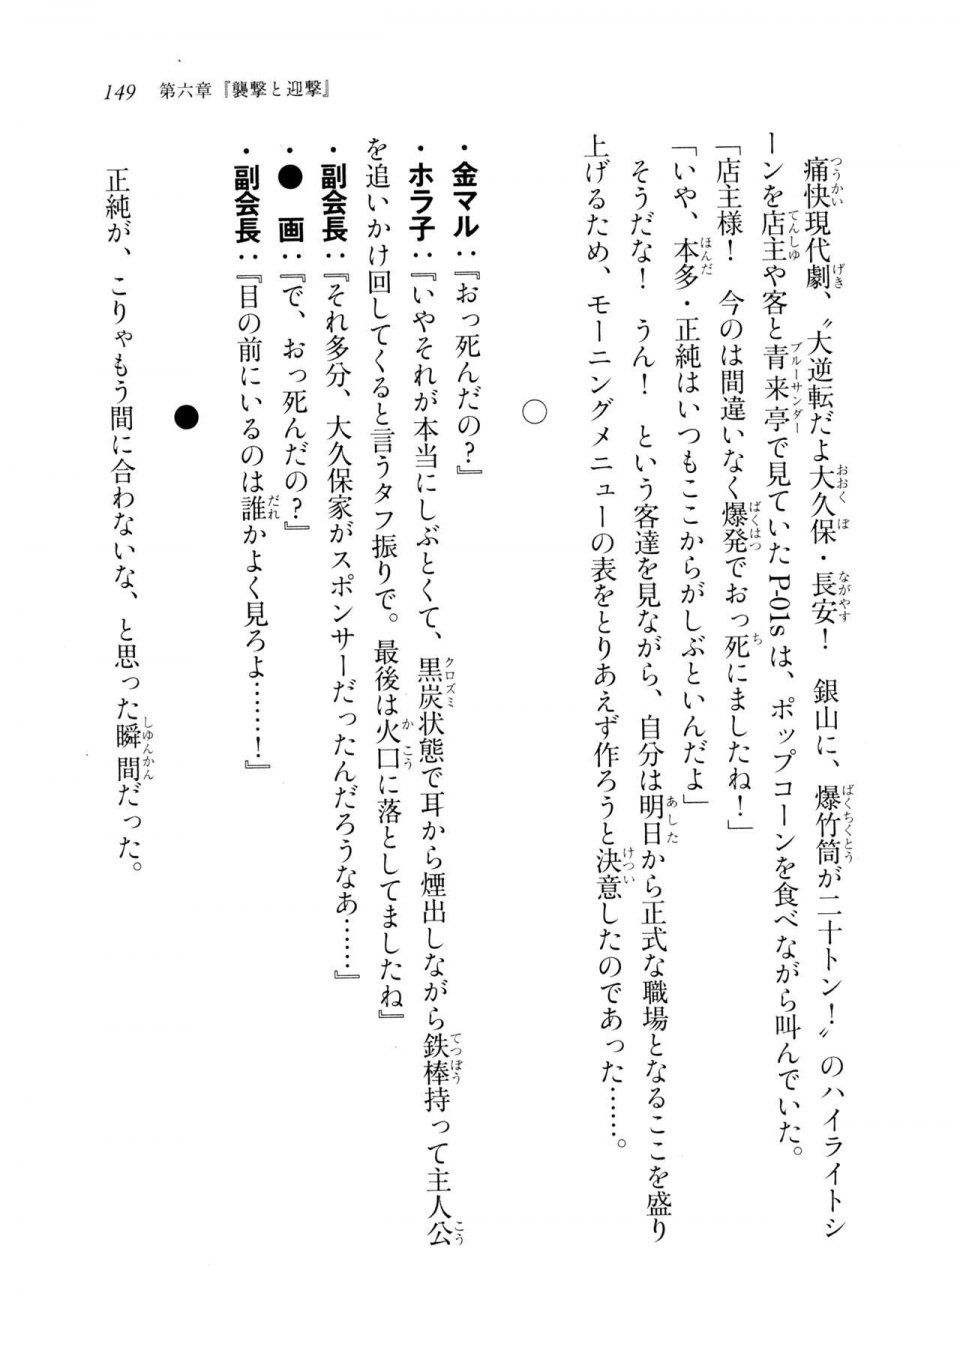 Kyoukai Senjou no Horizon LN Sidestory Vol 2 - Photo #147